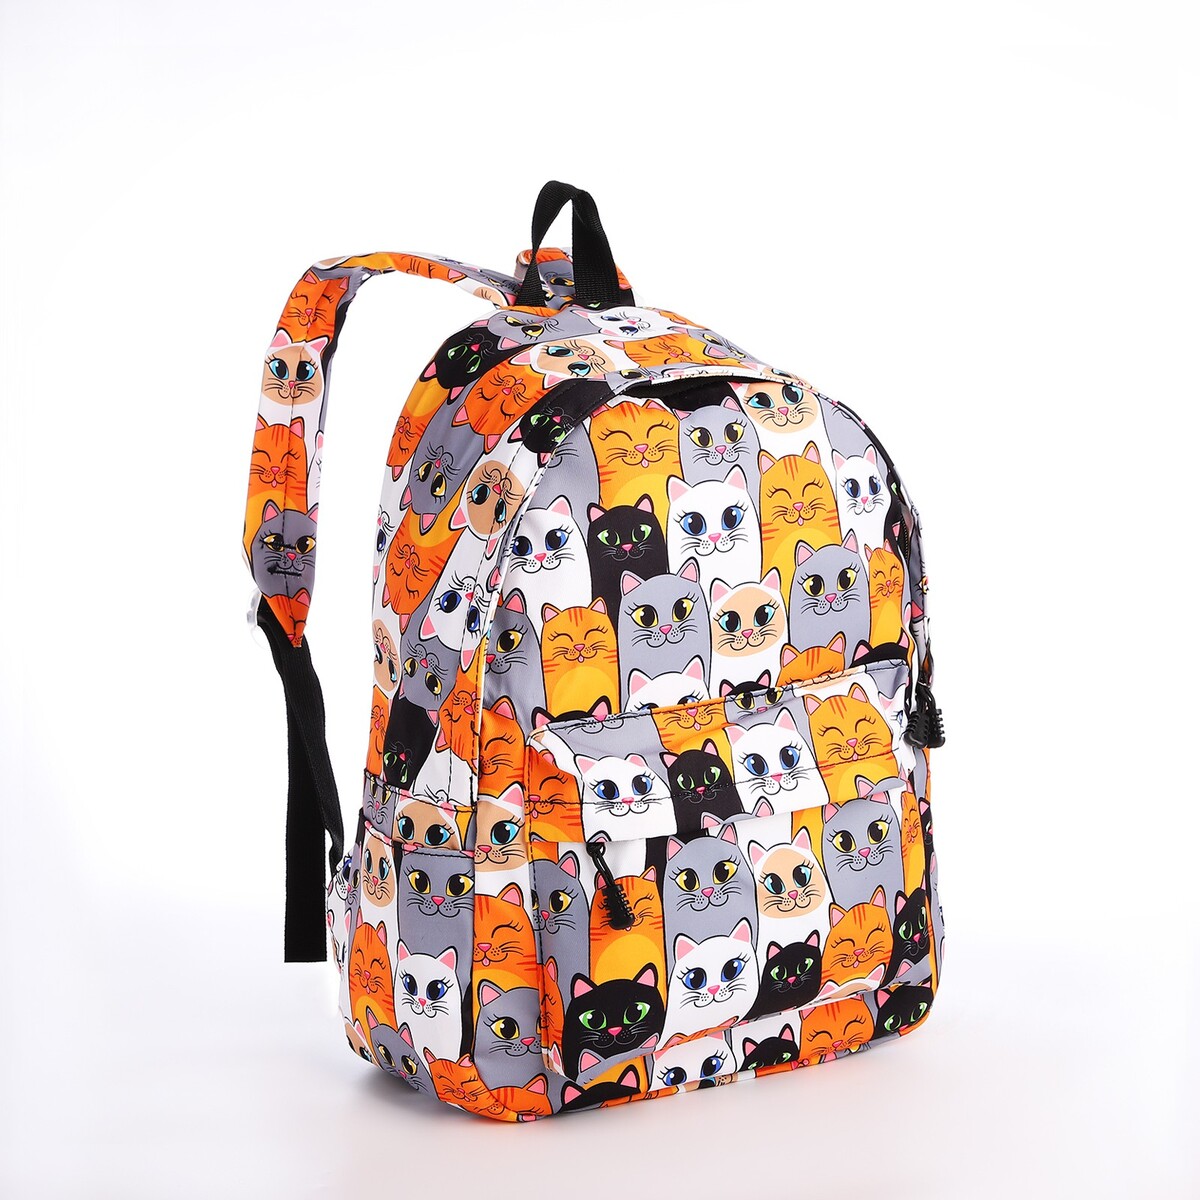 Рюкзак школьный из текстиля на молнии, 4 кармана, кошелек, цвет серый/оранжевый